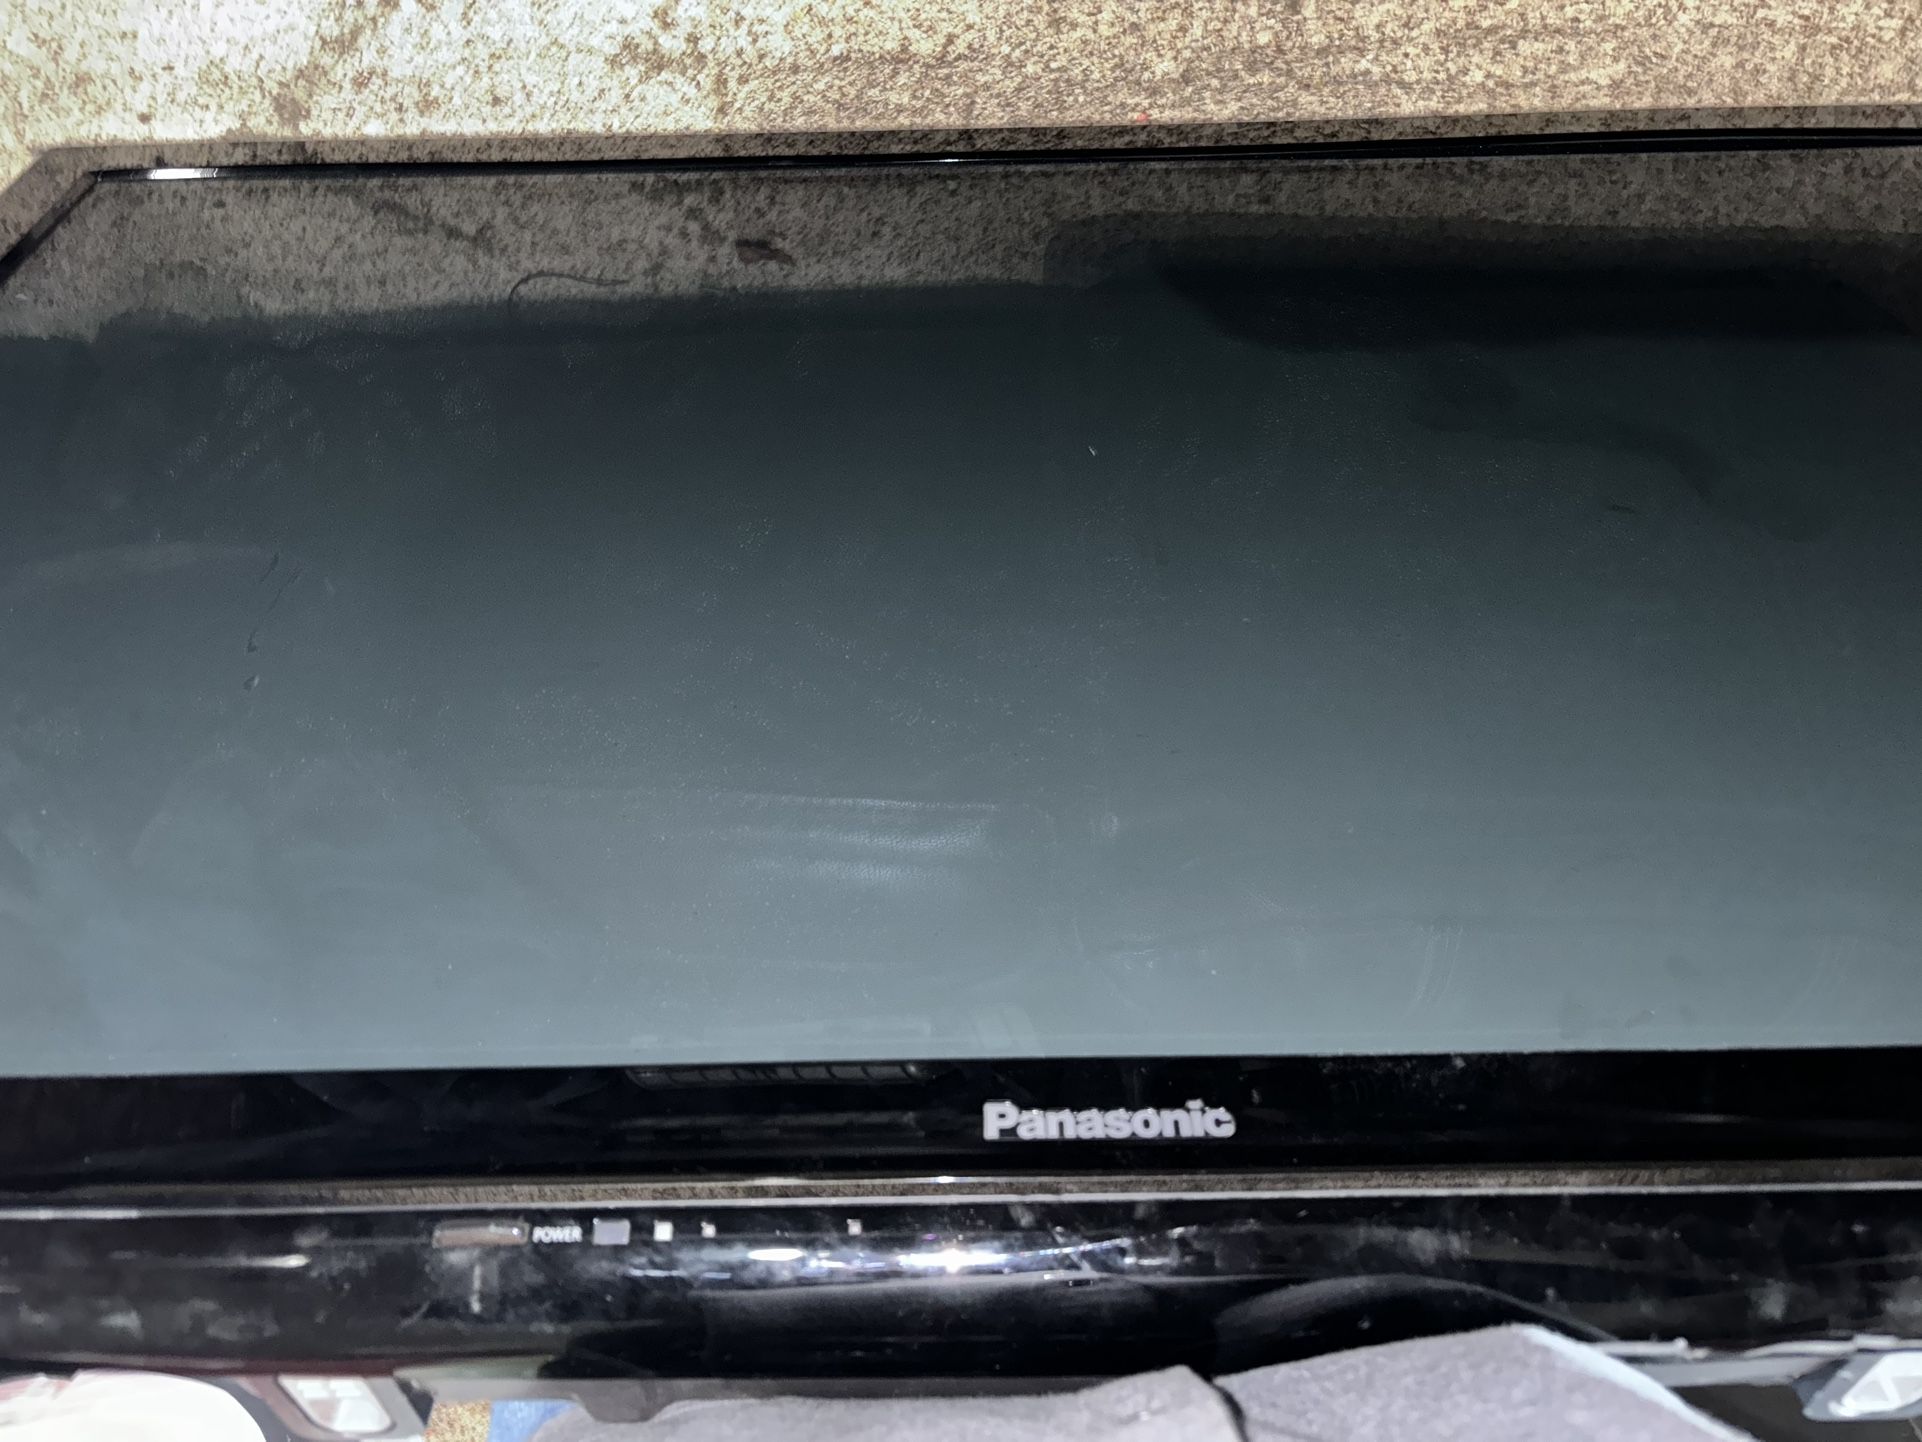 Panasonic 58” Plasma TV